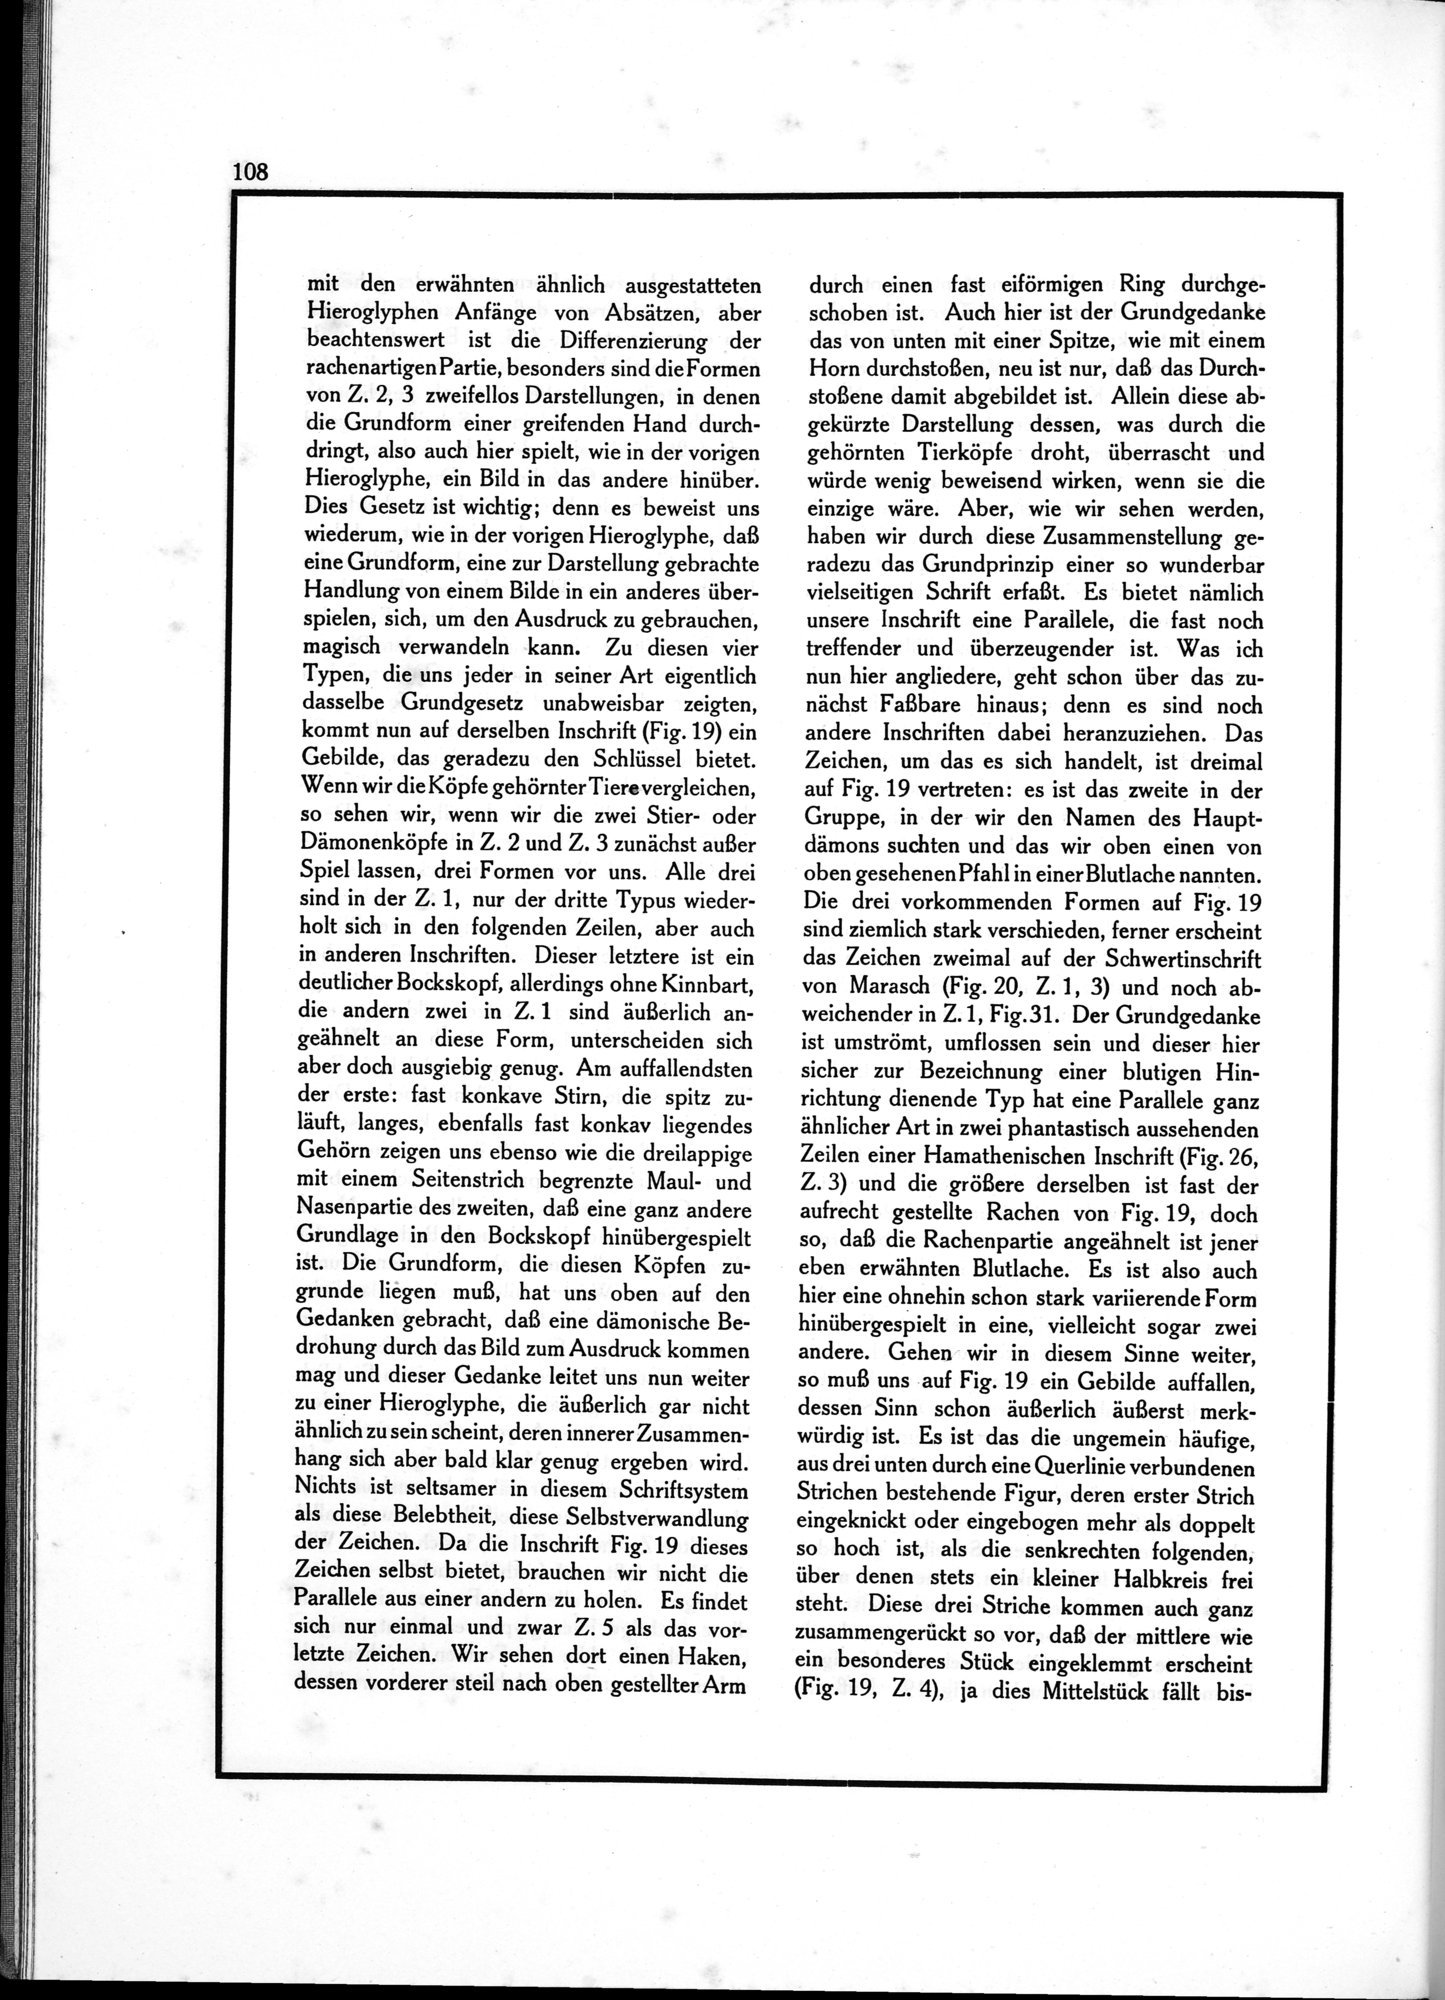 Die Teufel des Avesta und Ihre Beziehungen zur Ikonographie des Buddhismus Zentral-Asiens : vol.1 / Page 112 (Grayscale High Resolution Image)